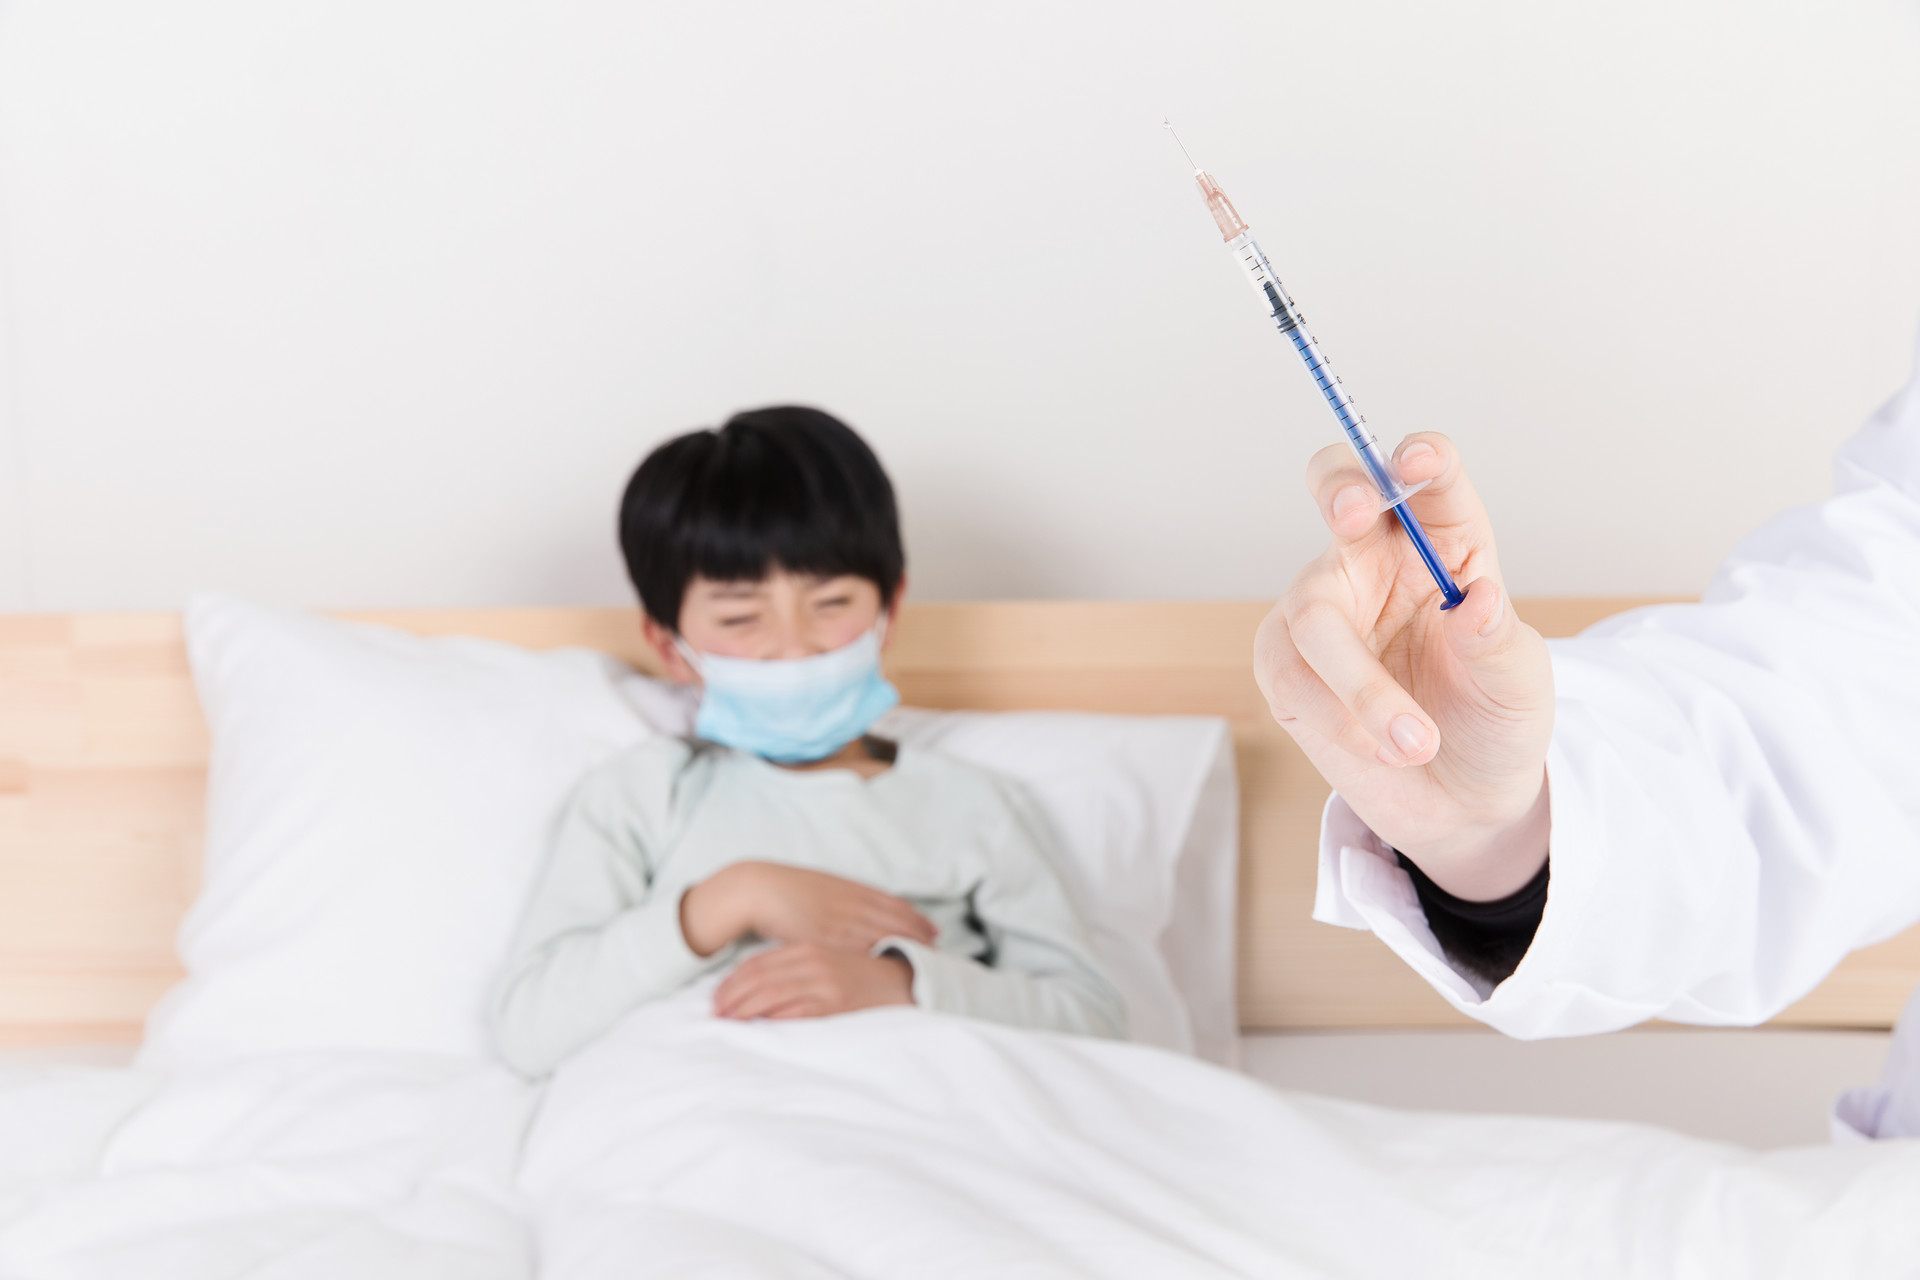 成都生物和北京科兴新冠疫苗区别对比